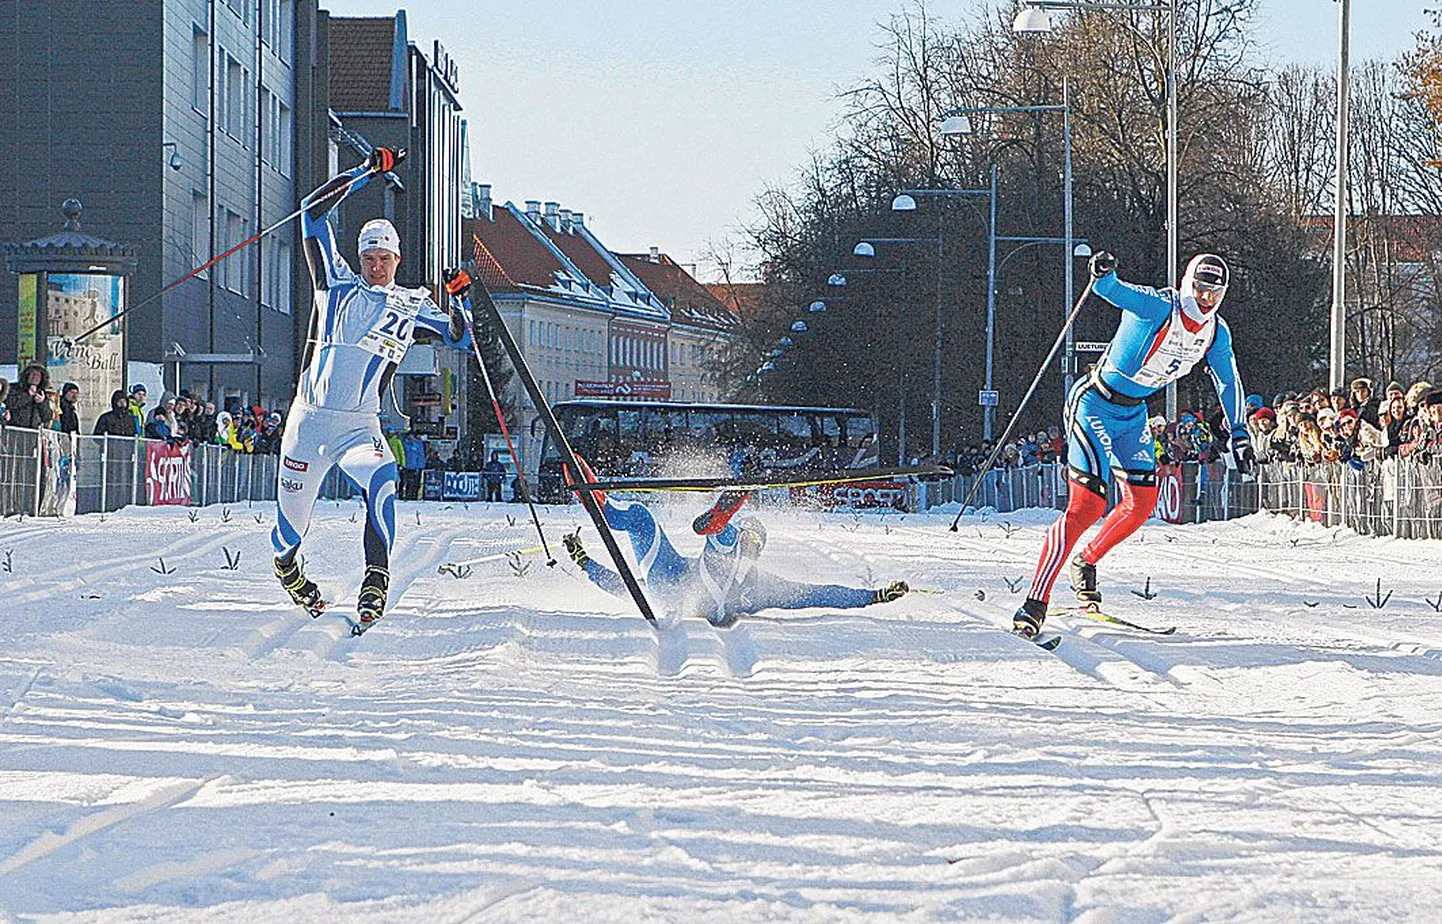 Pildil on finišeerumas võistluse kiireimad, kolm pjedestaaliastmete pärast heitlema jäänud meest Kein Einaste (ülemisel pildil vasakult), soomlane Kalle Lassila ja venelane Gleb Retivõh.